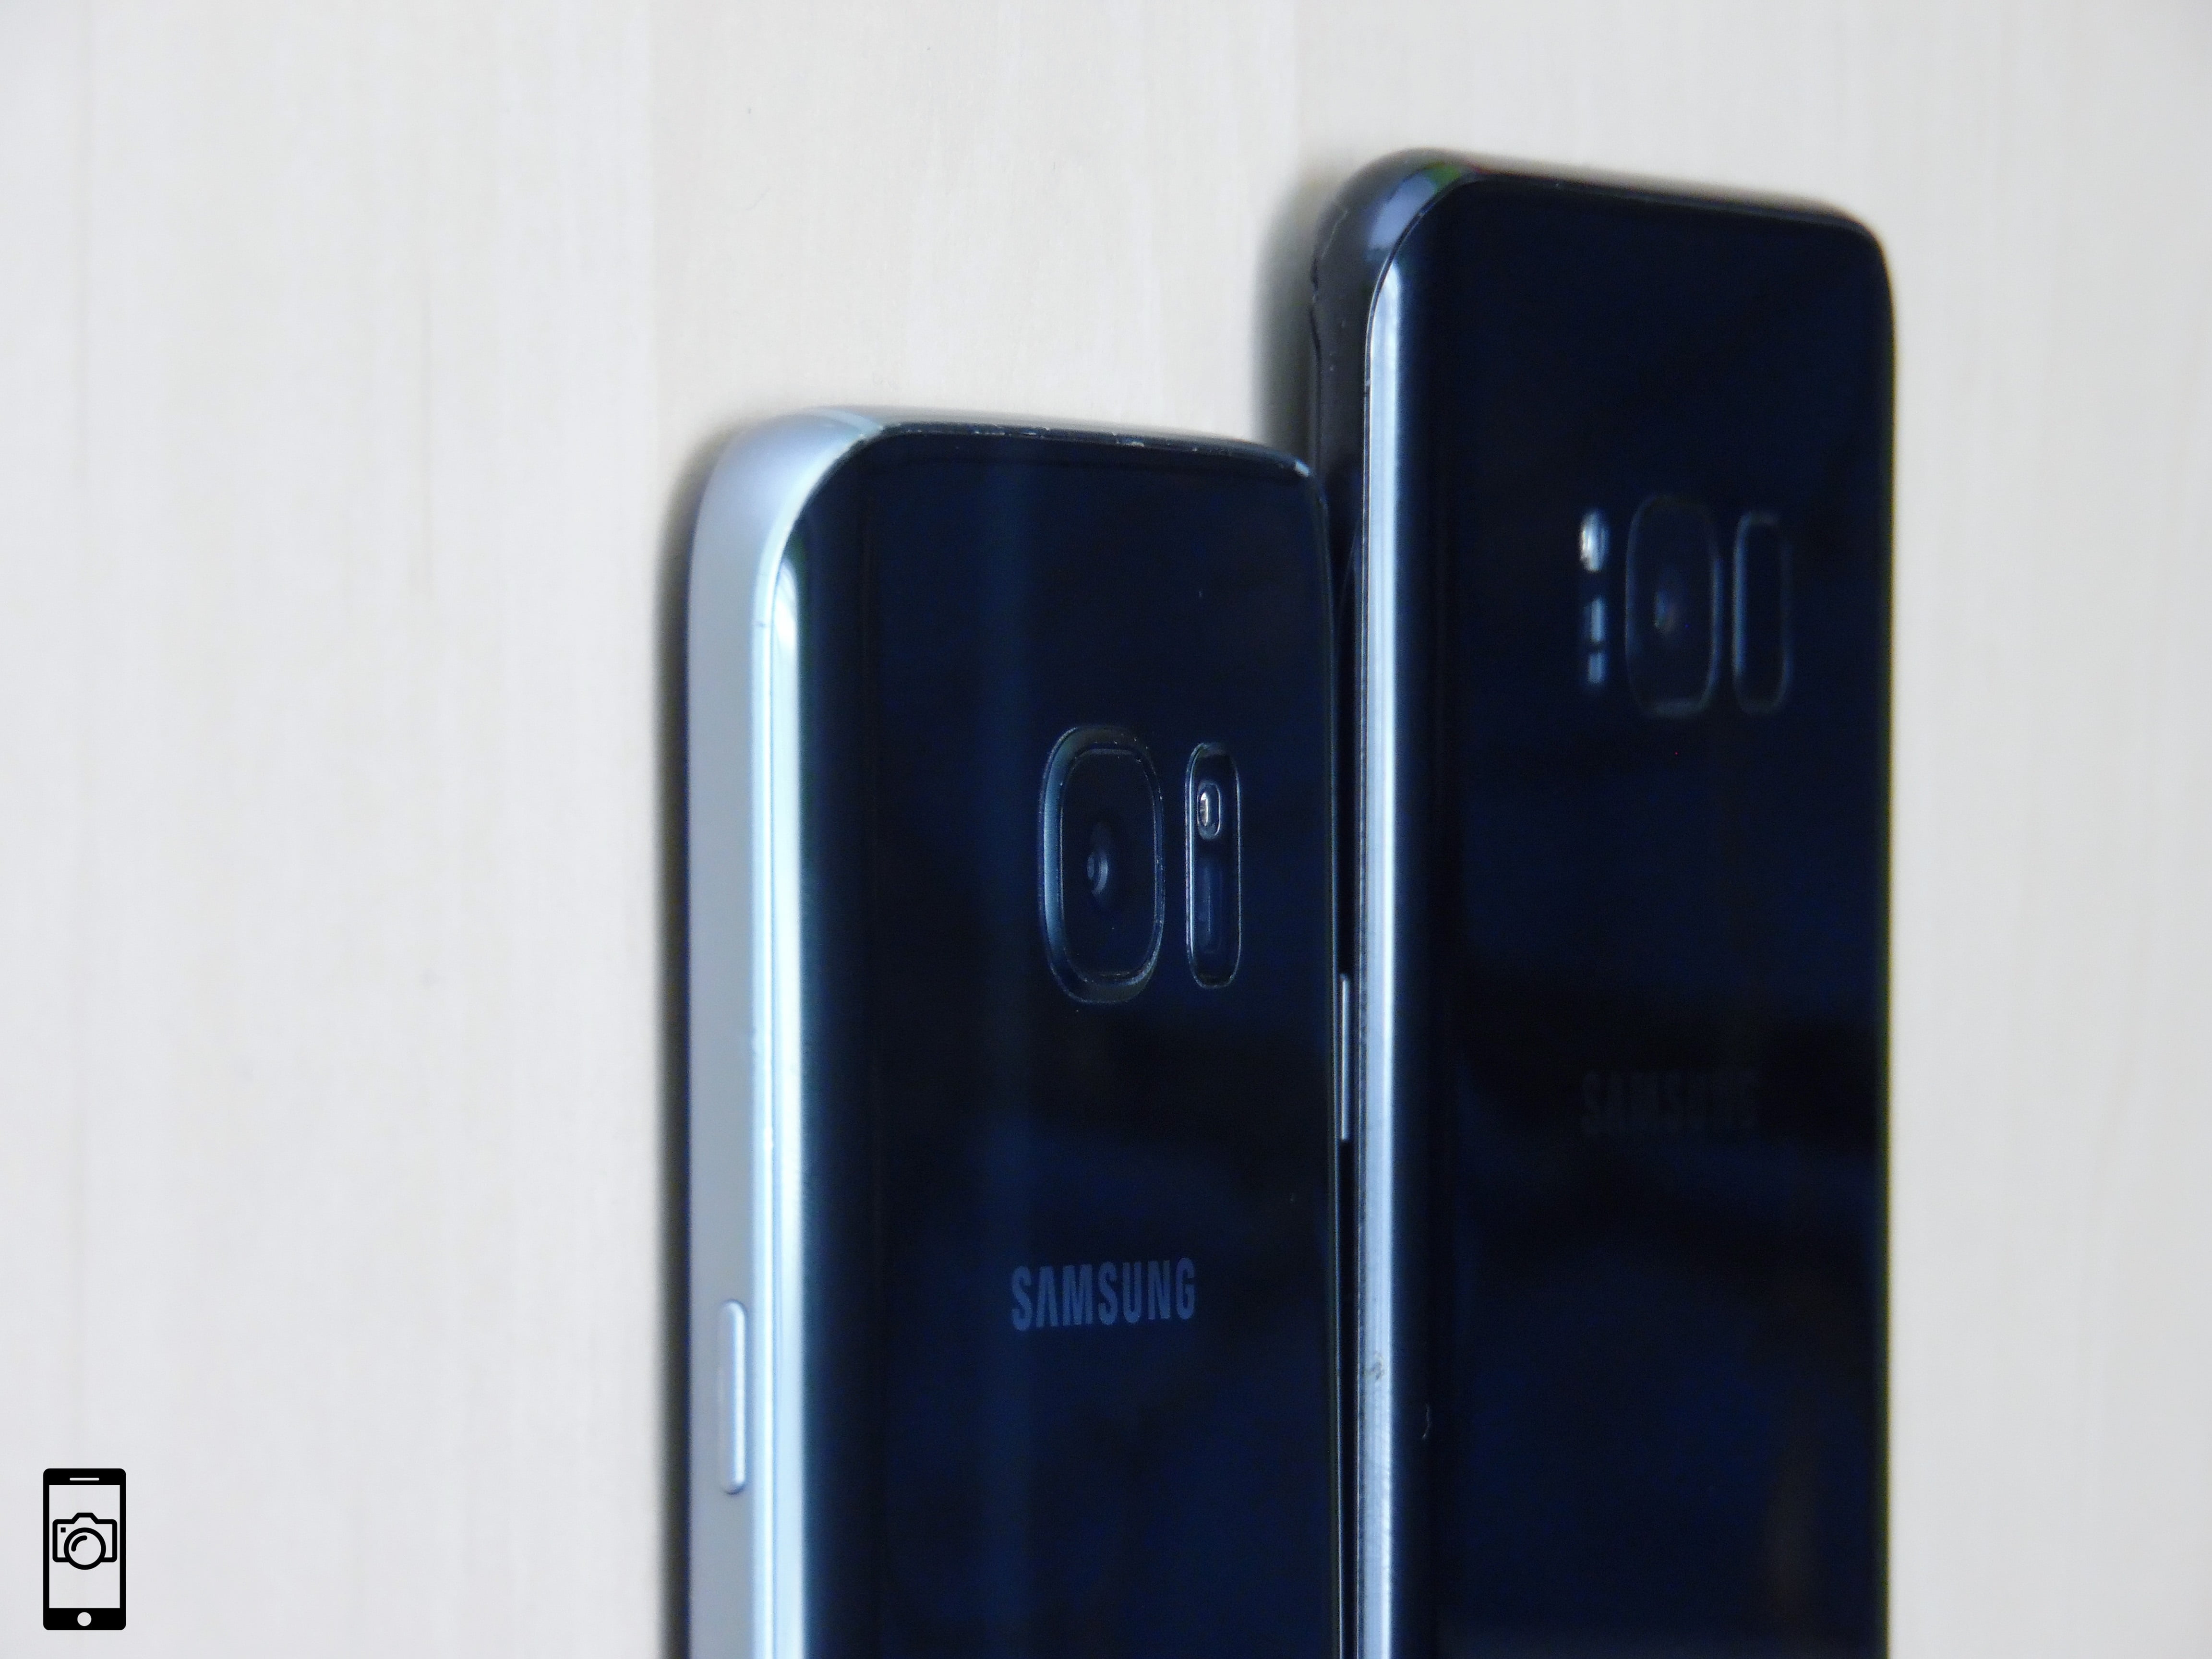 Samsung Galaxy S7 vs Galaxy S8 Plus